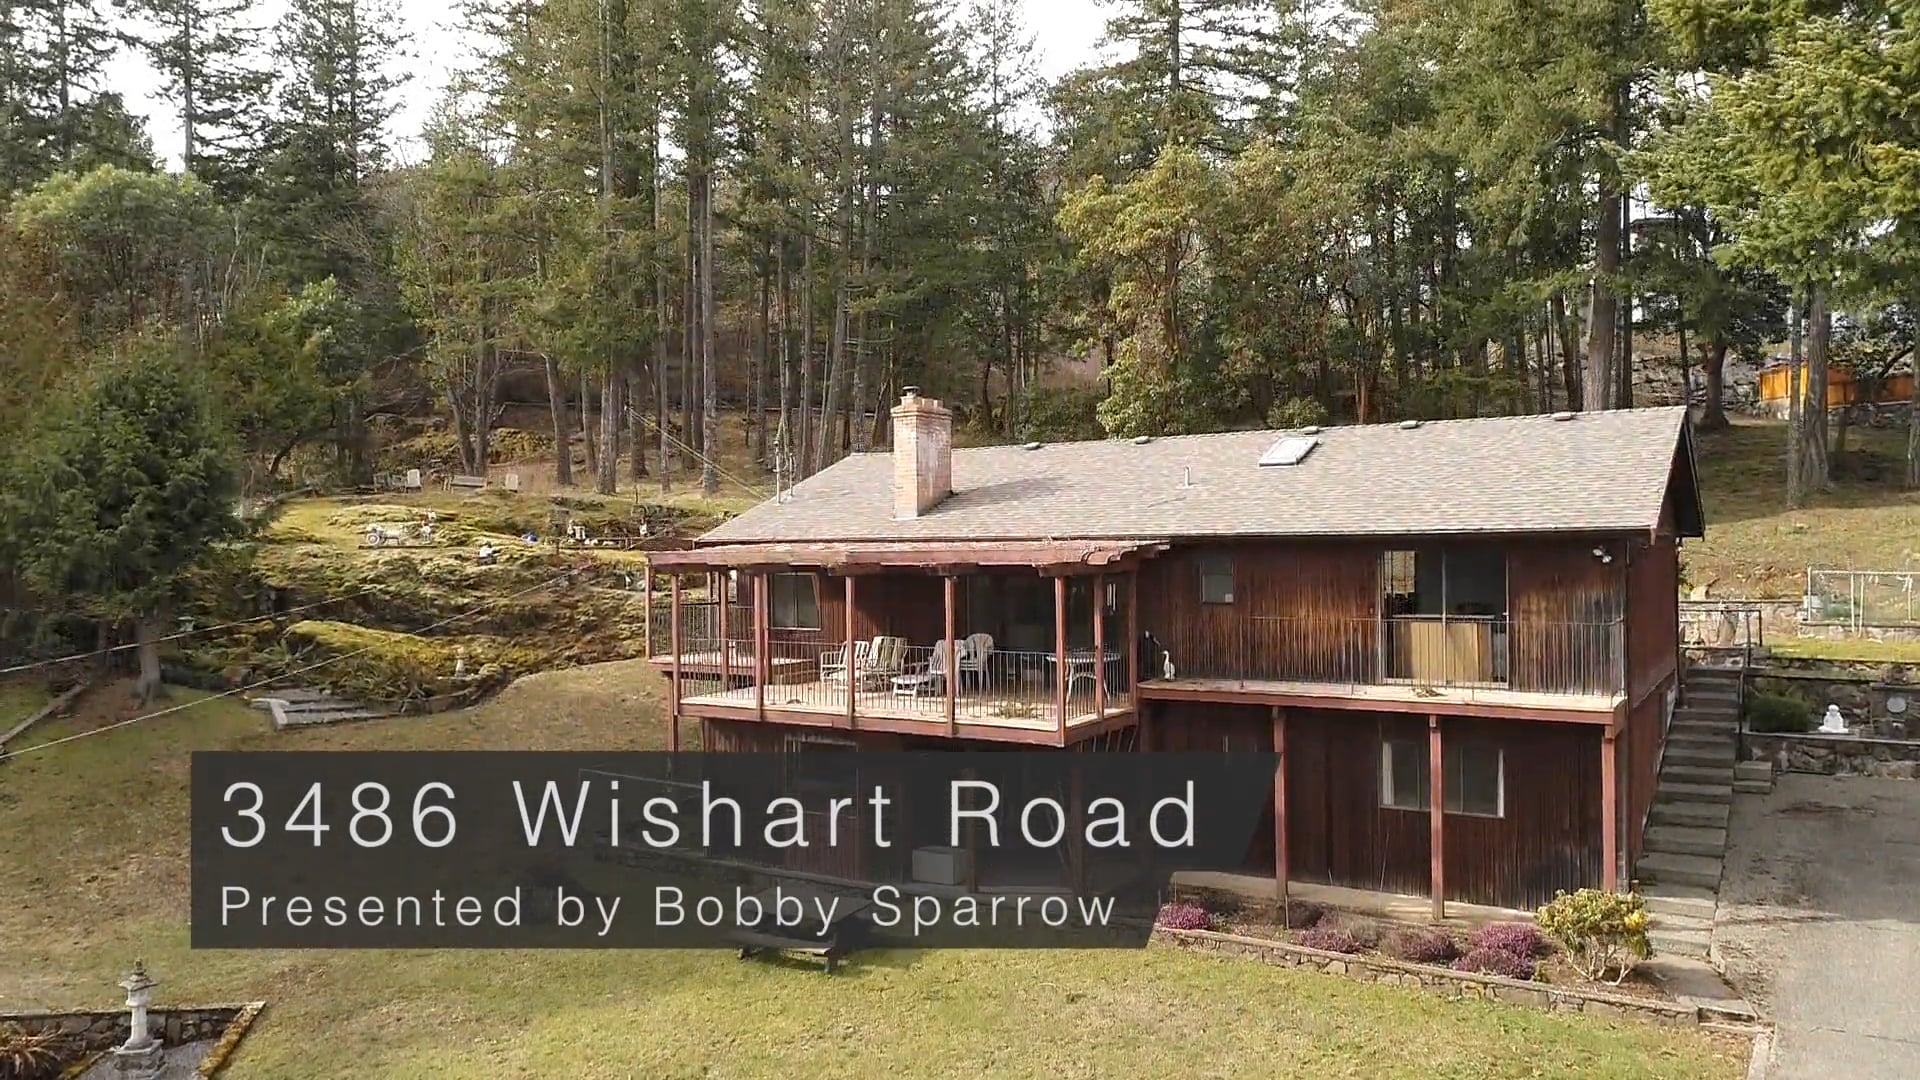 Bobby Sparrow Presents 3486 Wishart Road On Vimeo 2820